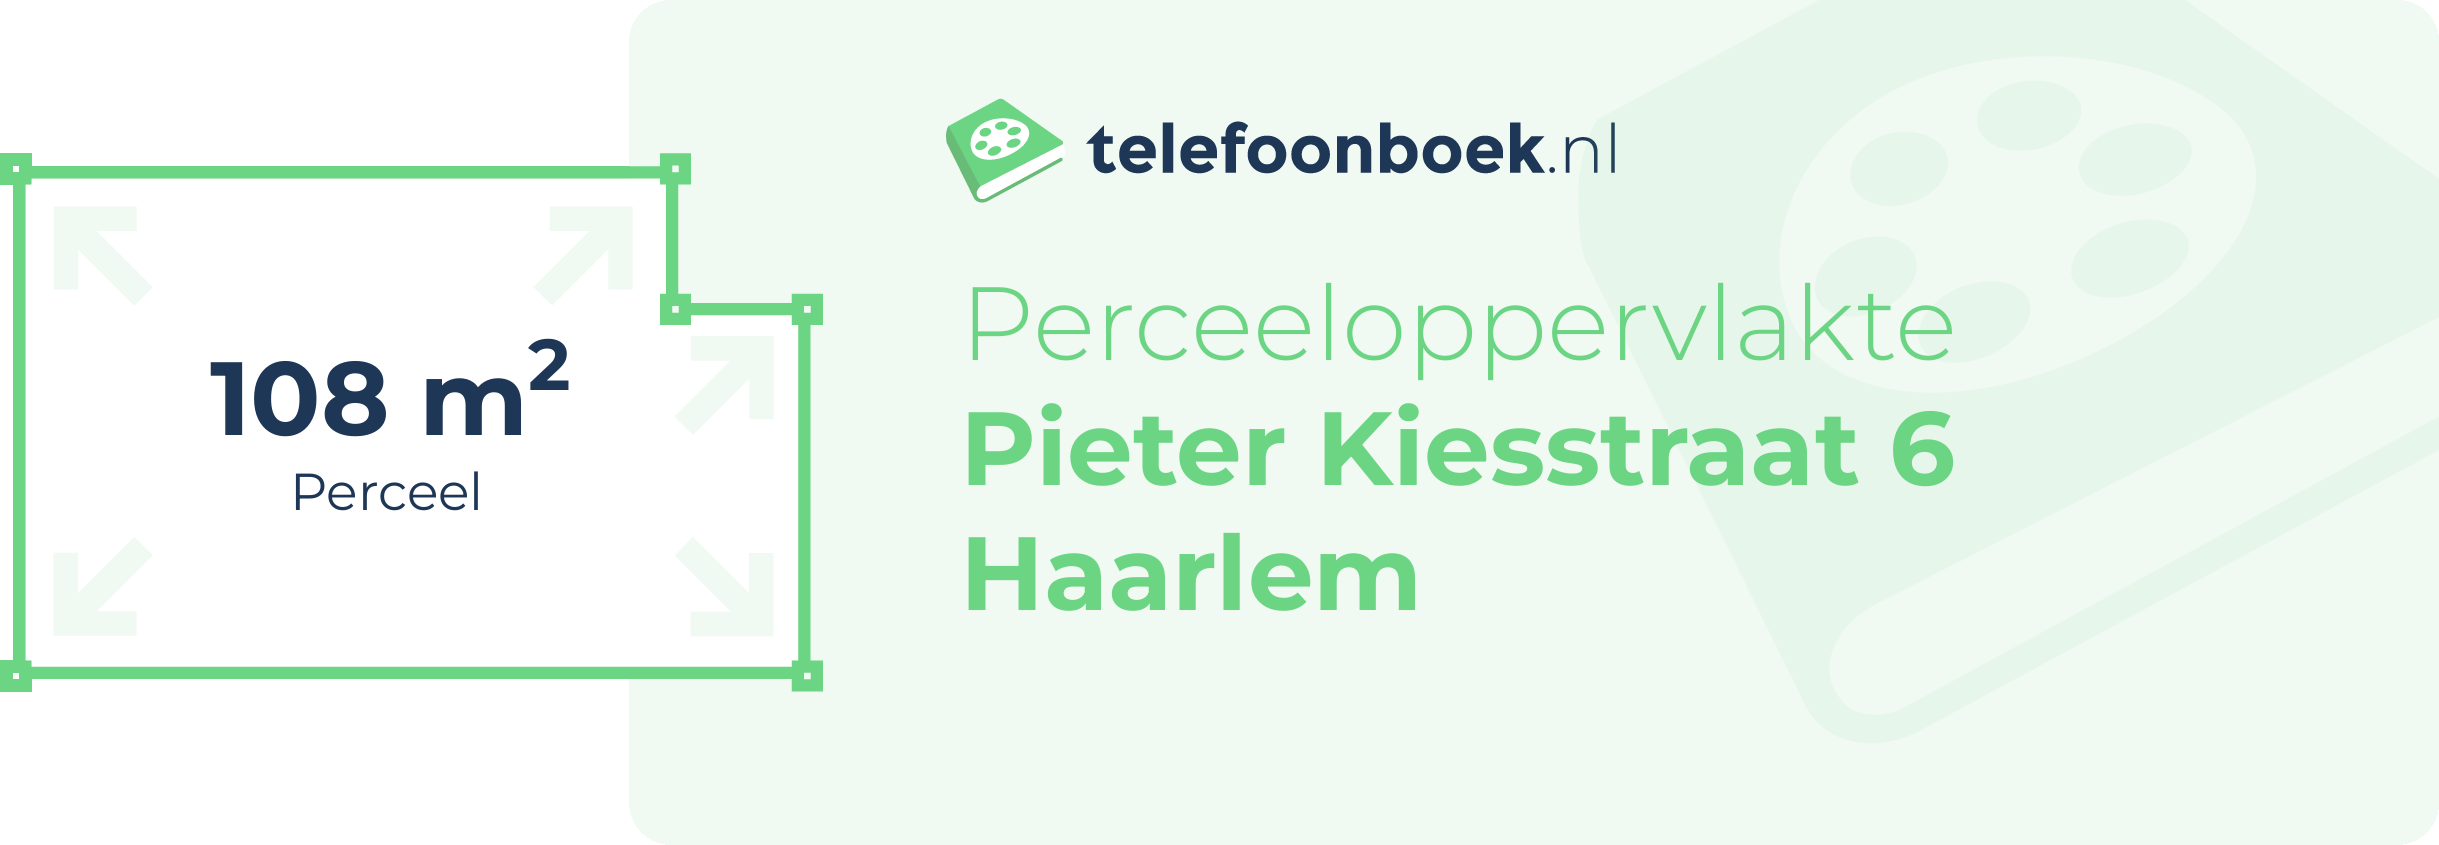 Perceeloppervlakte Pieter Kiesstraat 6 Haarlem